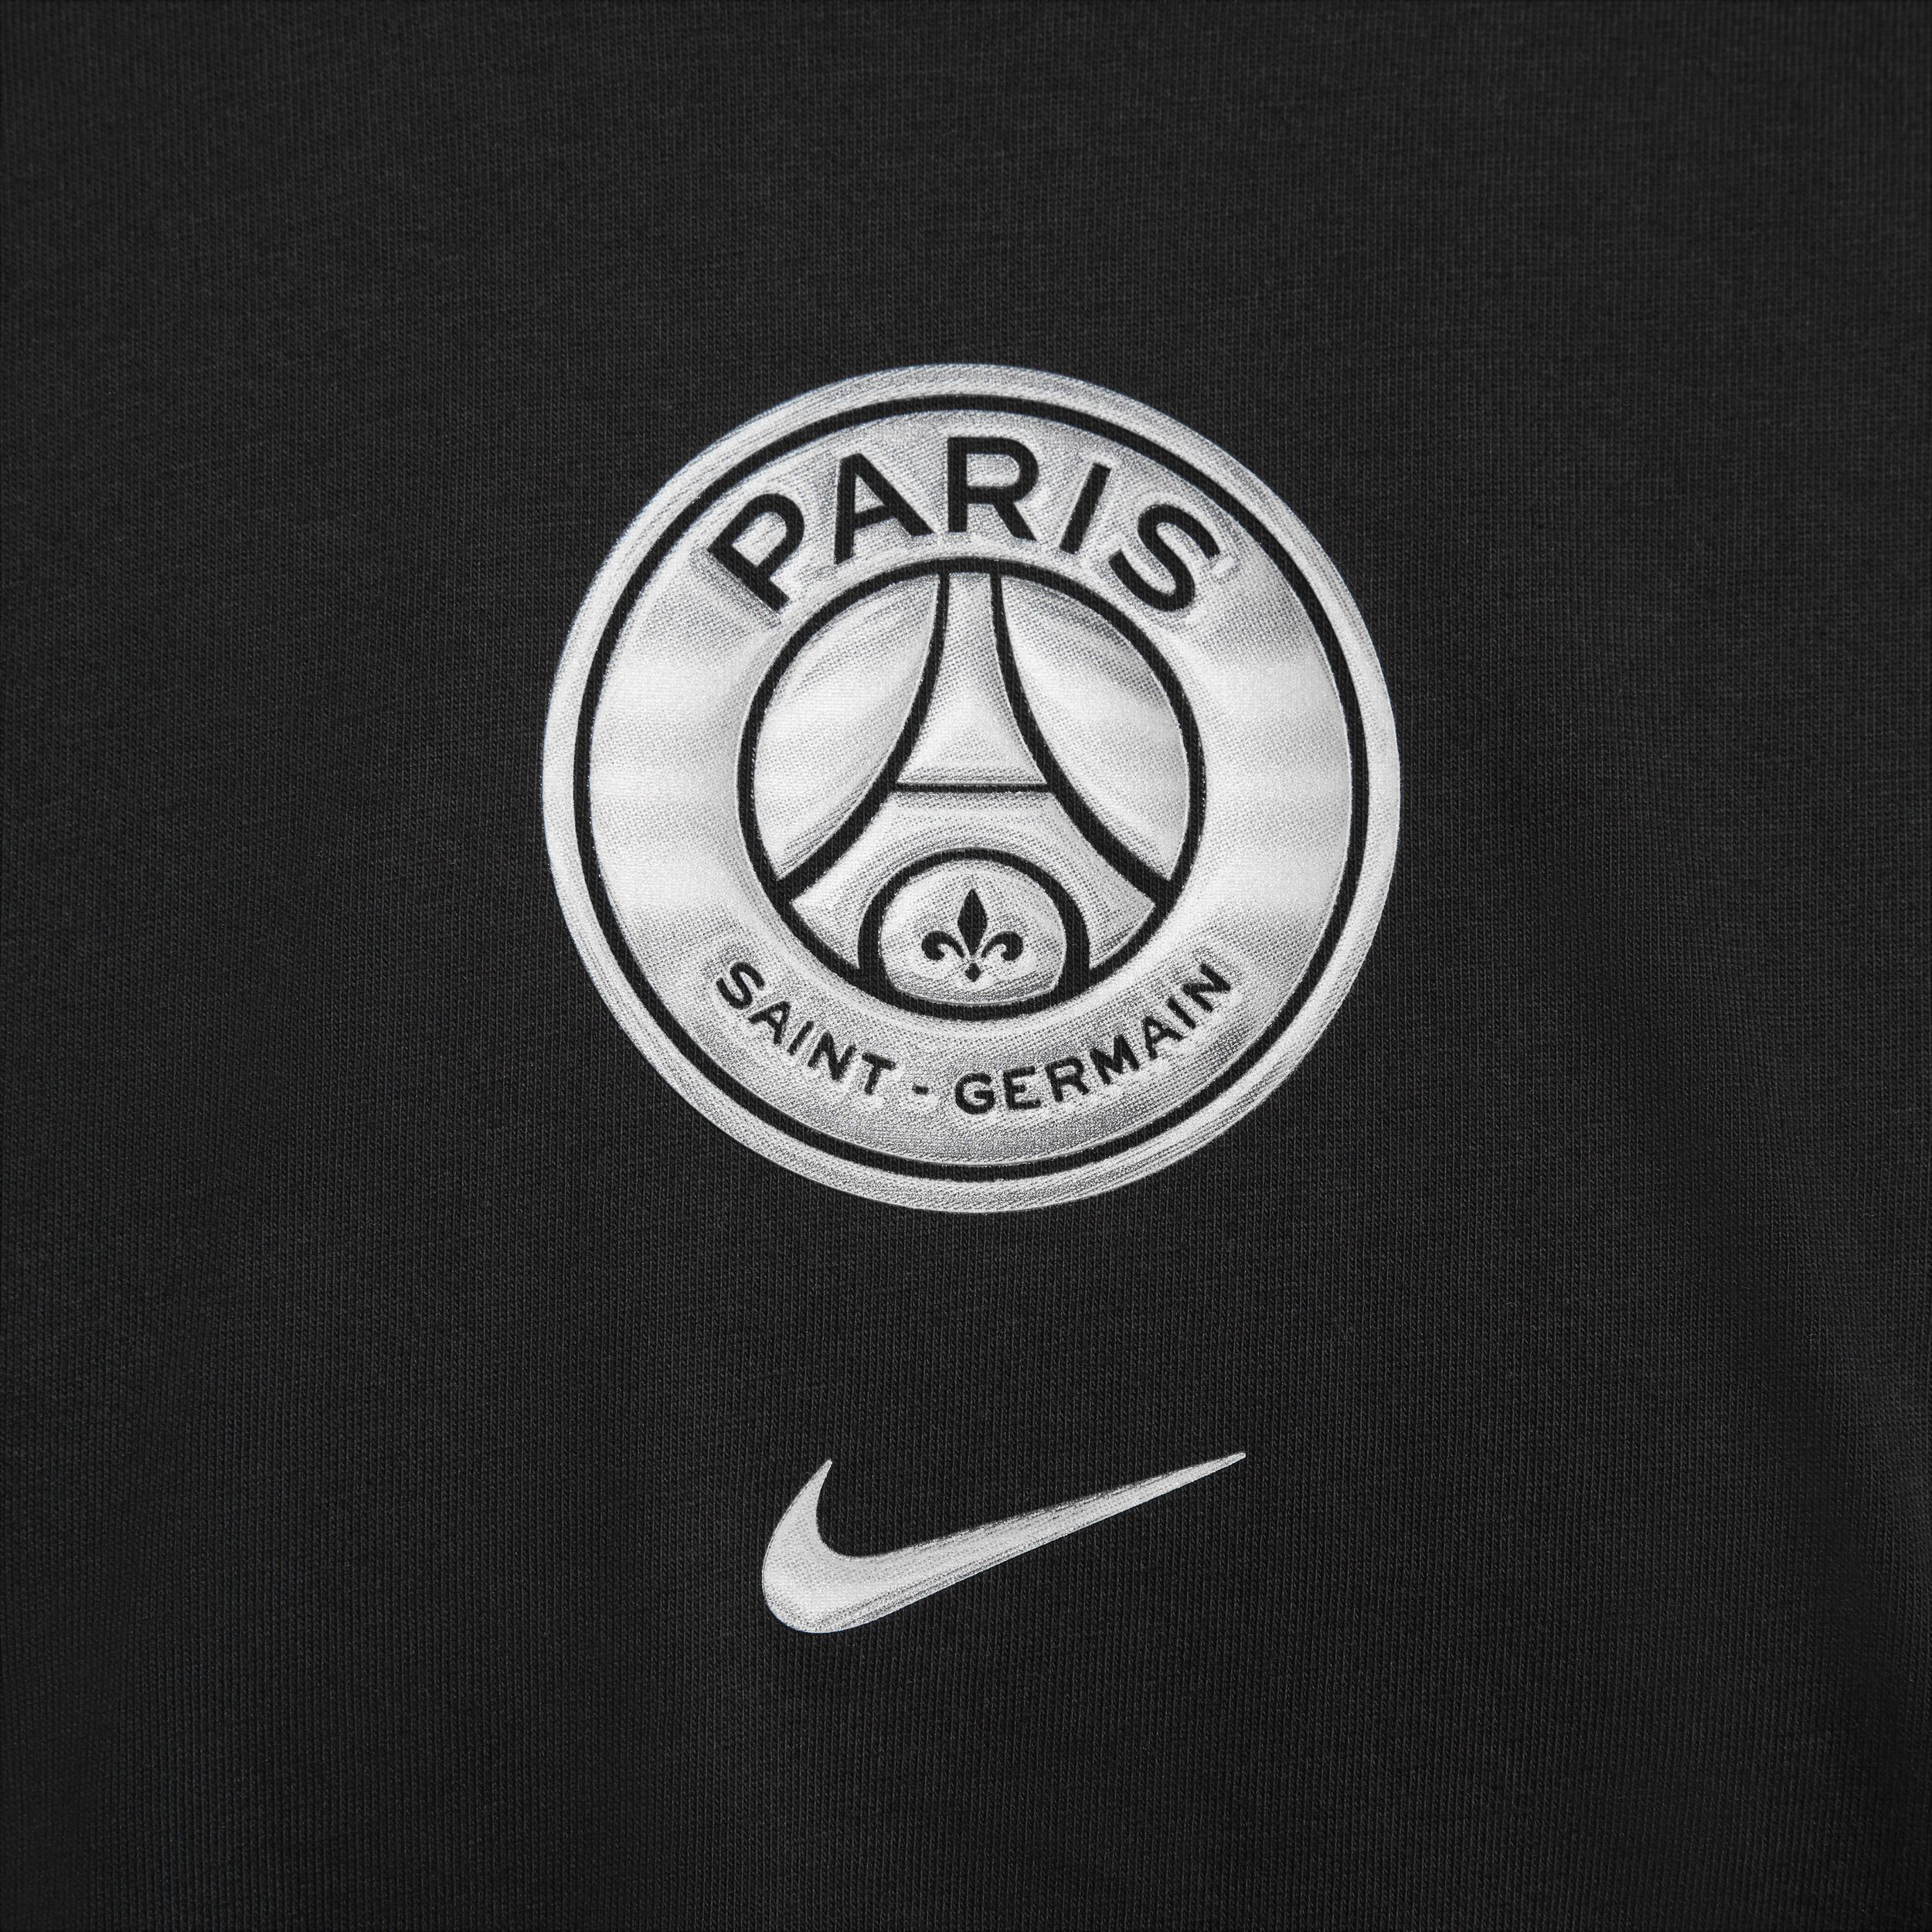 Nike Paris Saint-Germain voetbalshirt met recht design voor dames Zwart